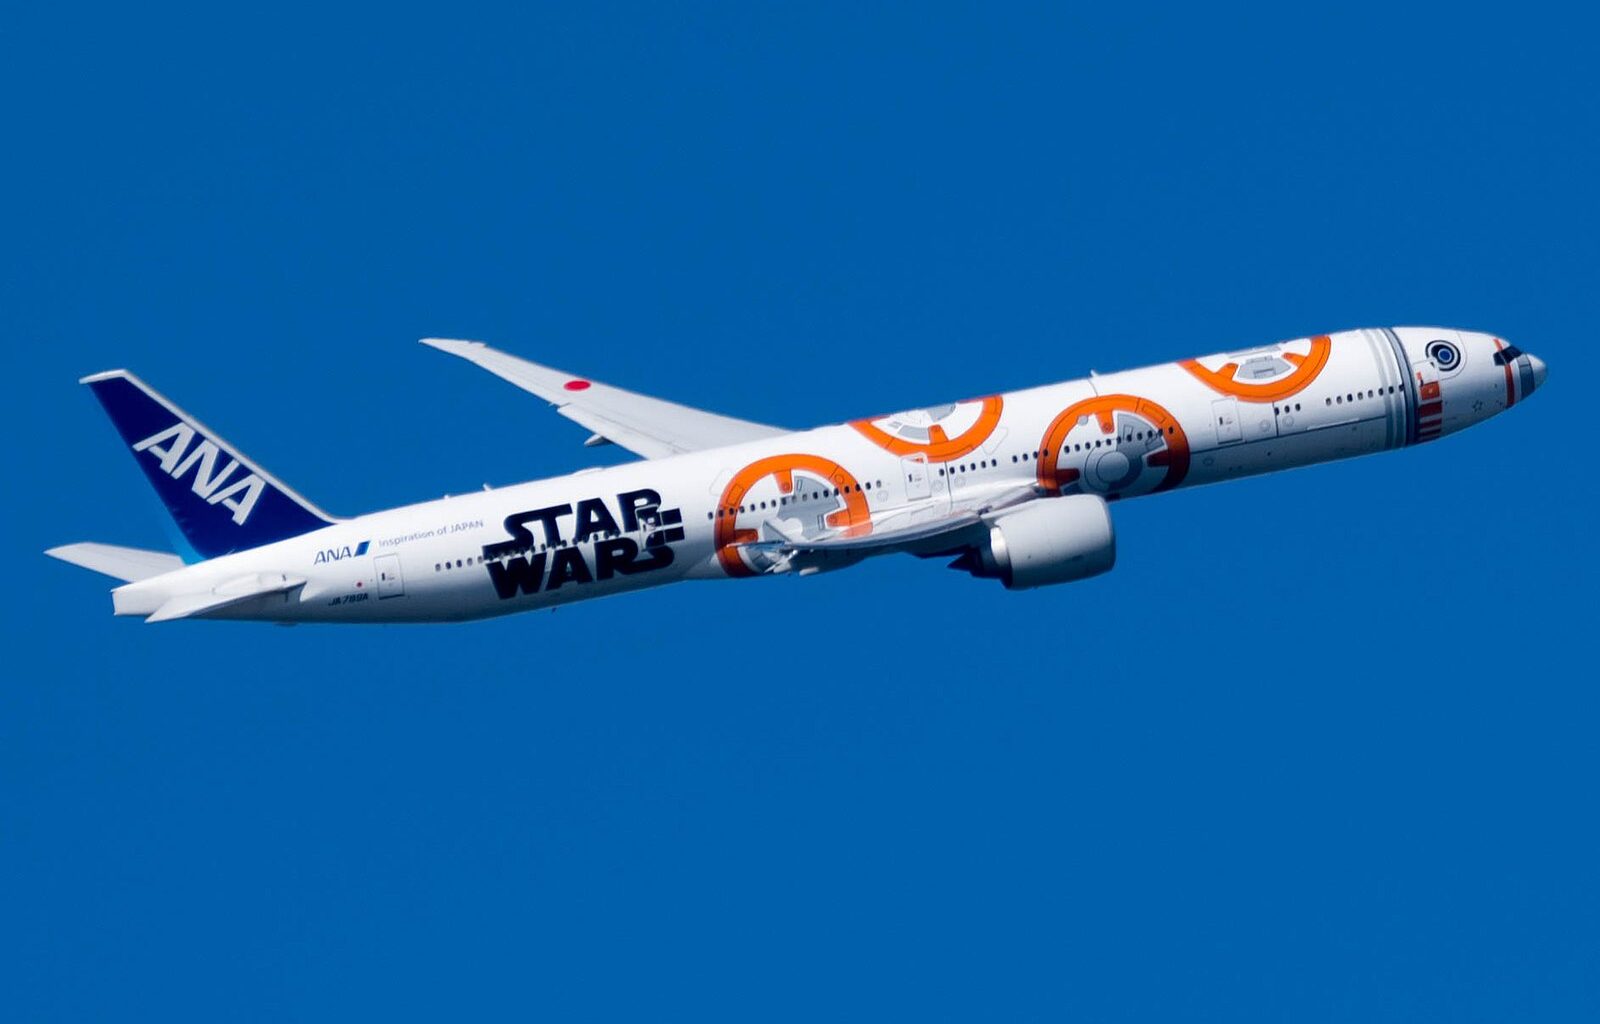 מטוס 777 של חברת ANA היפנית בצביעת מלחמת הכוכבים